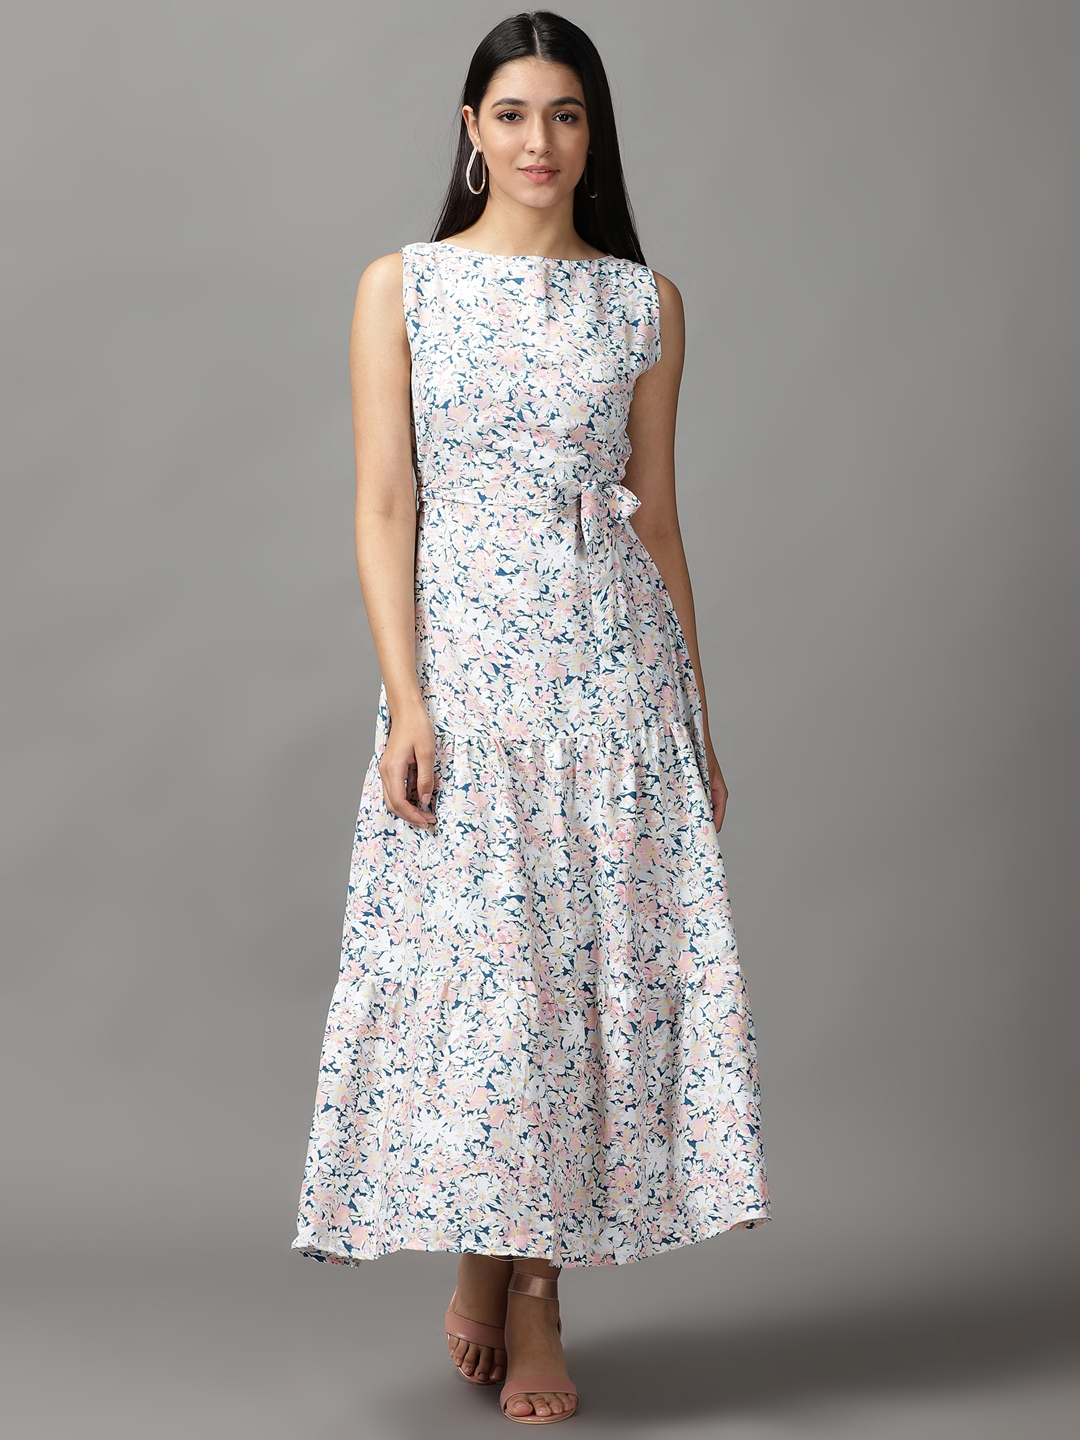 Women's Multi Cotton Floral Dresses